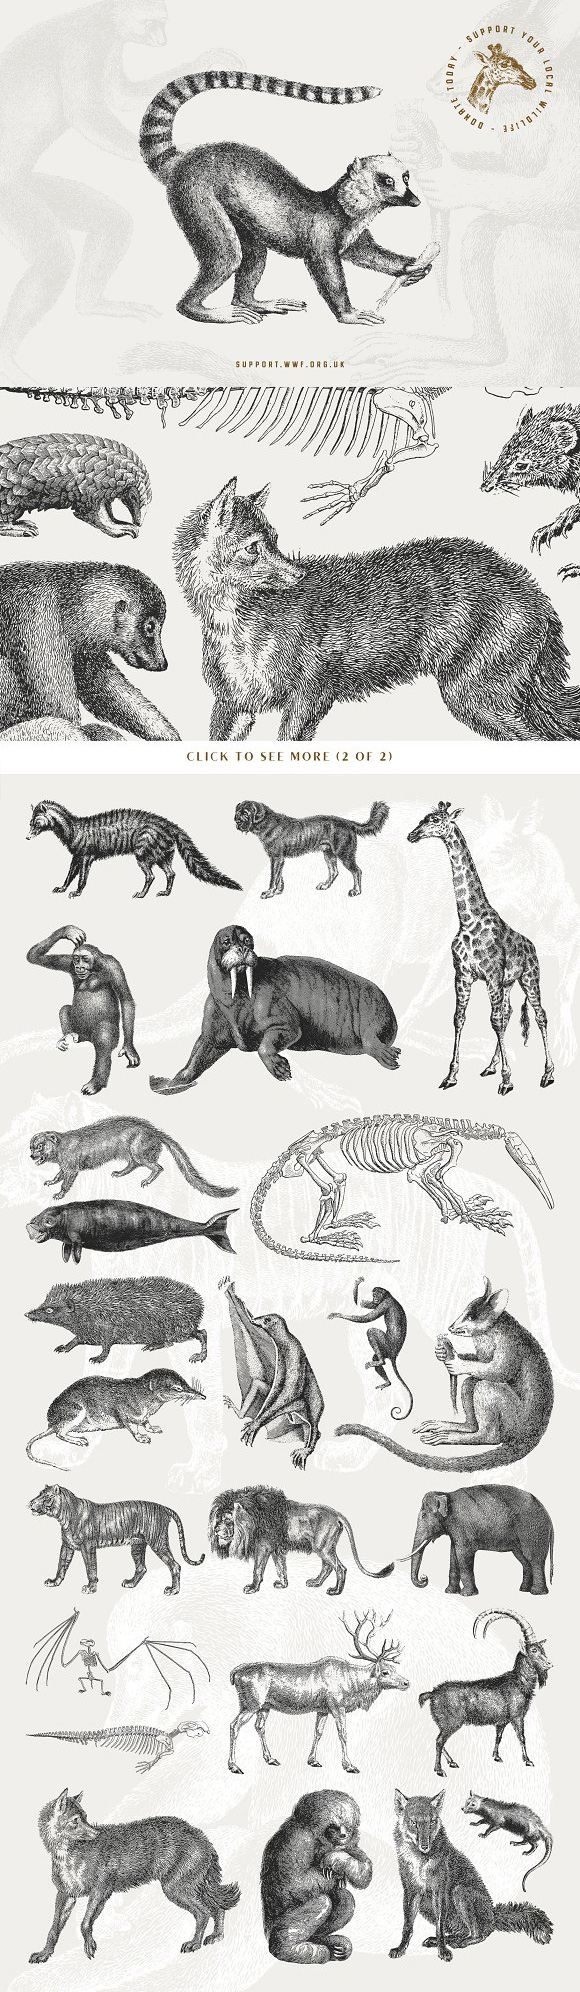 手绘素描斑马大象狮子豹懒猴鼬鼠鼬刺猬马哺乳动物AI矢量素材下载3